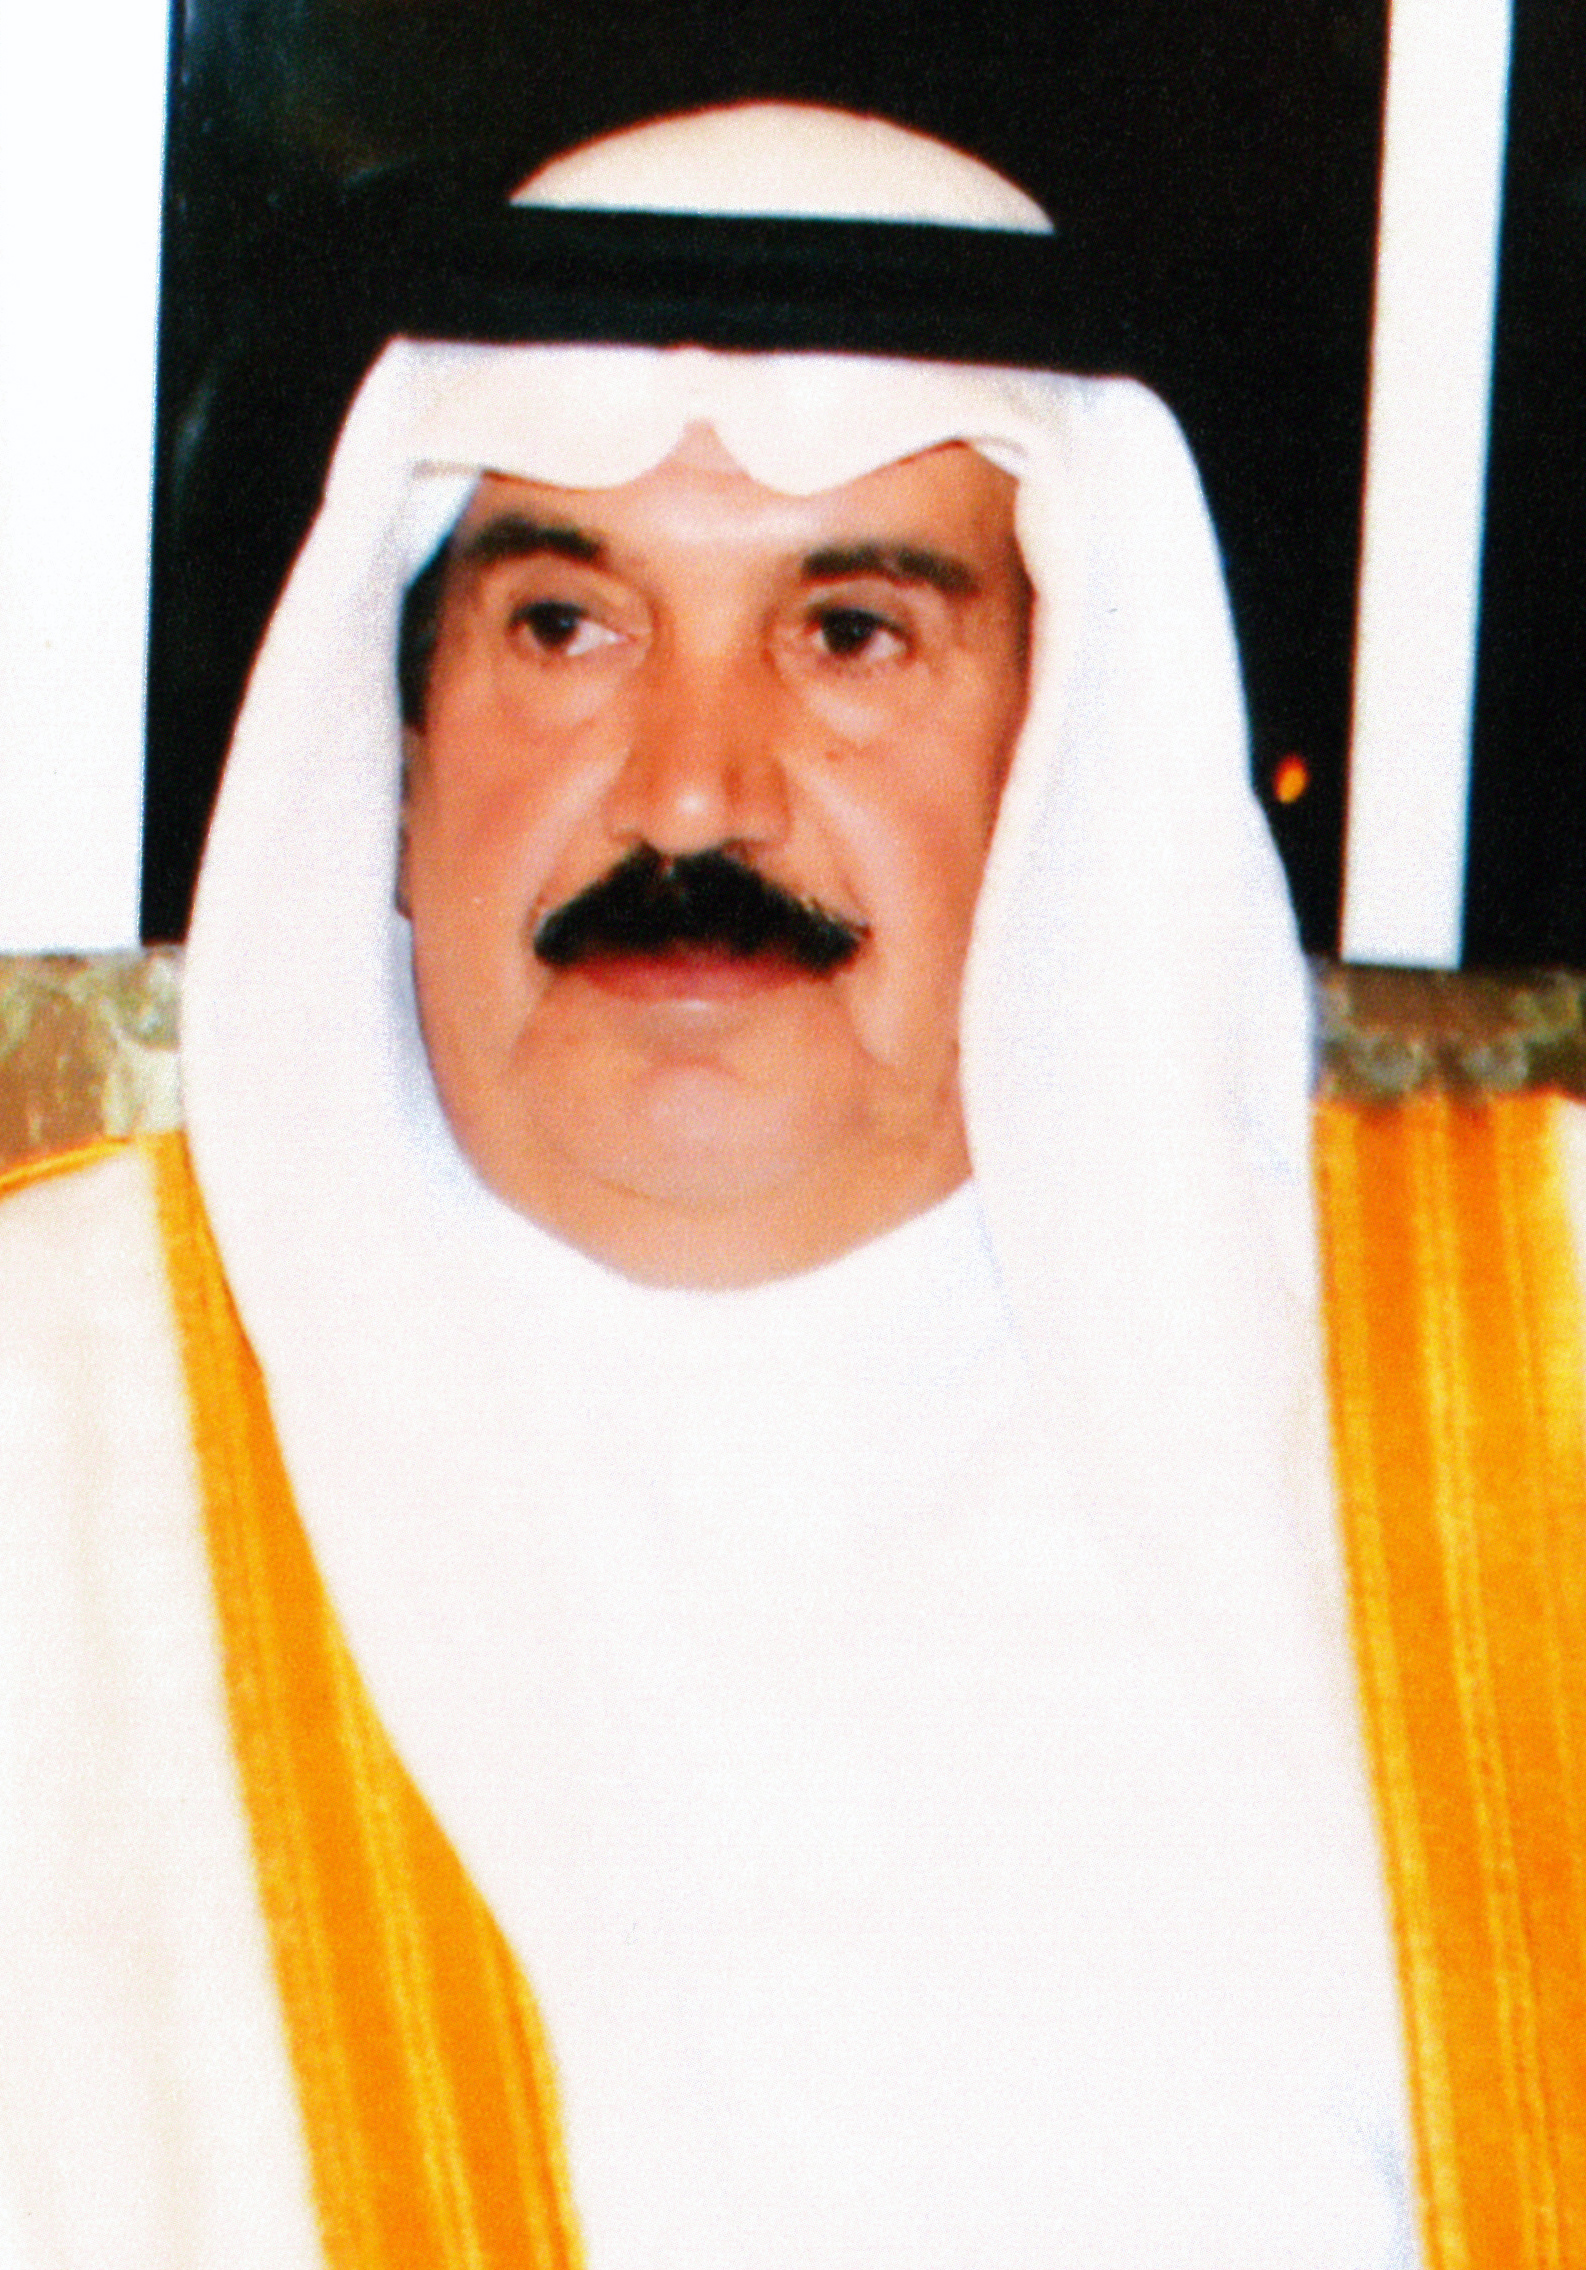 معالي الشيخ دعيج بن سلمان آل خليفةBahrainNOW.net | دعيج بن سلمان: انشاء الهيئة العامة للرياضة